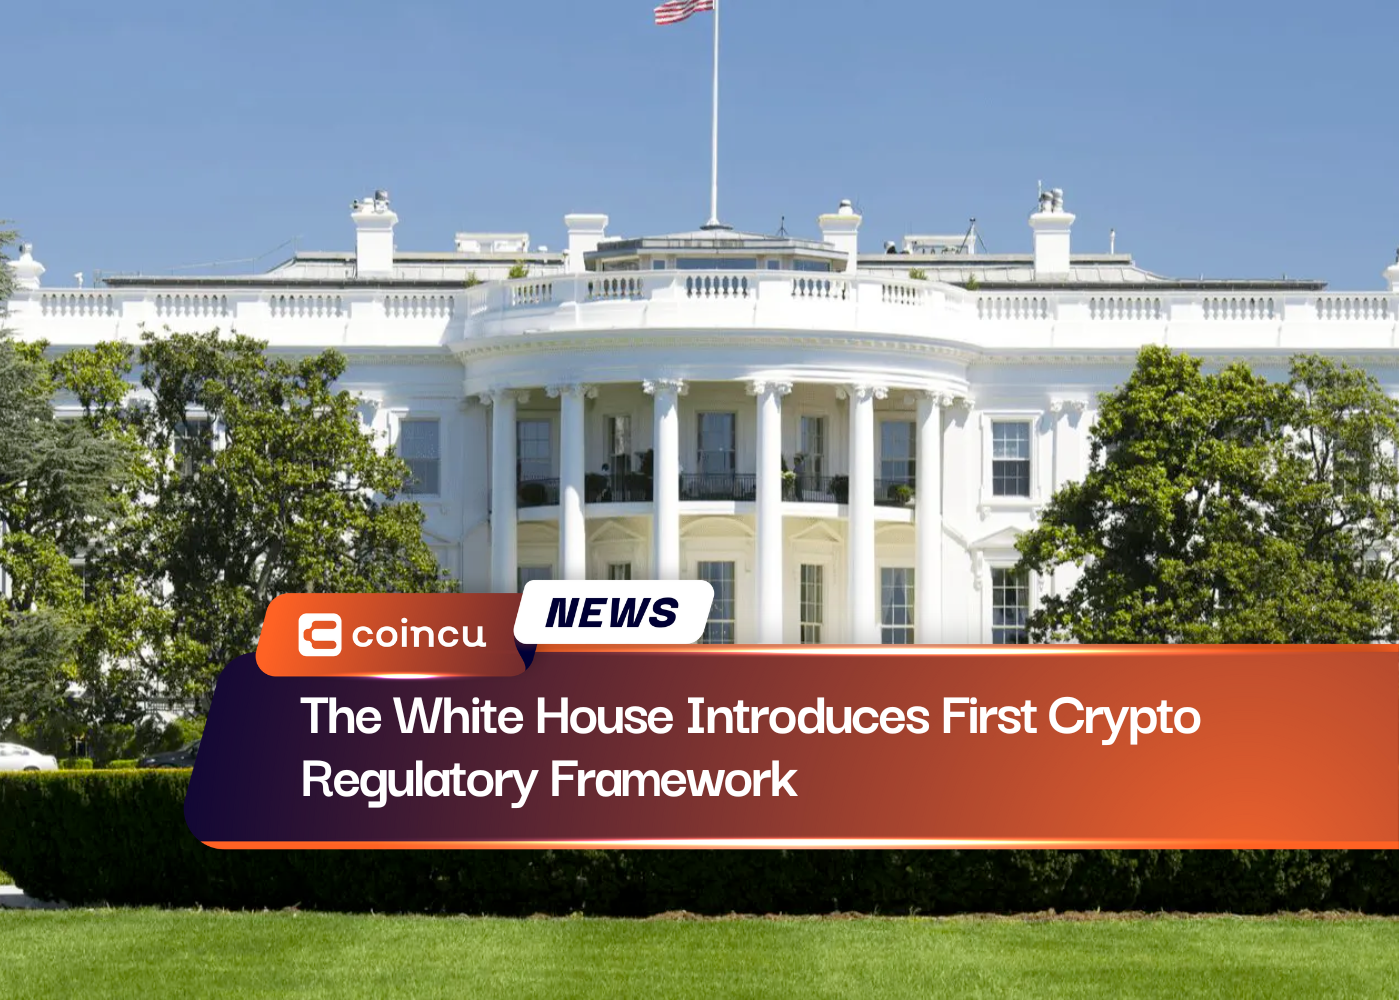 La Maison Blanche présente le premier cadre réglementaire de cryptographie